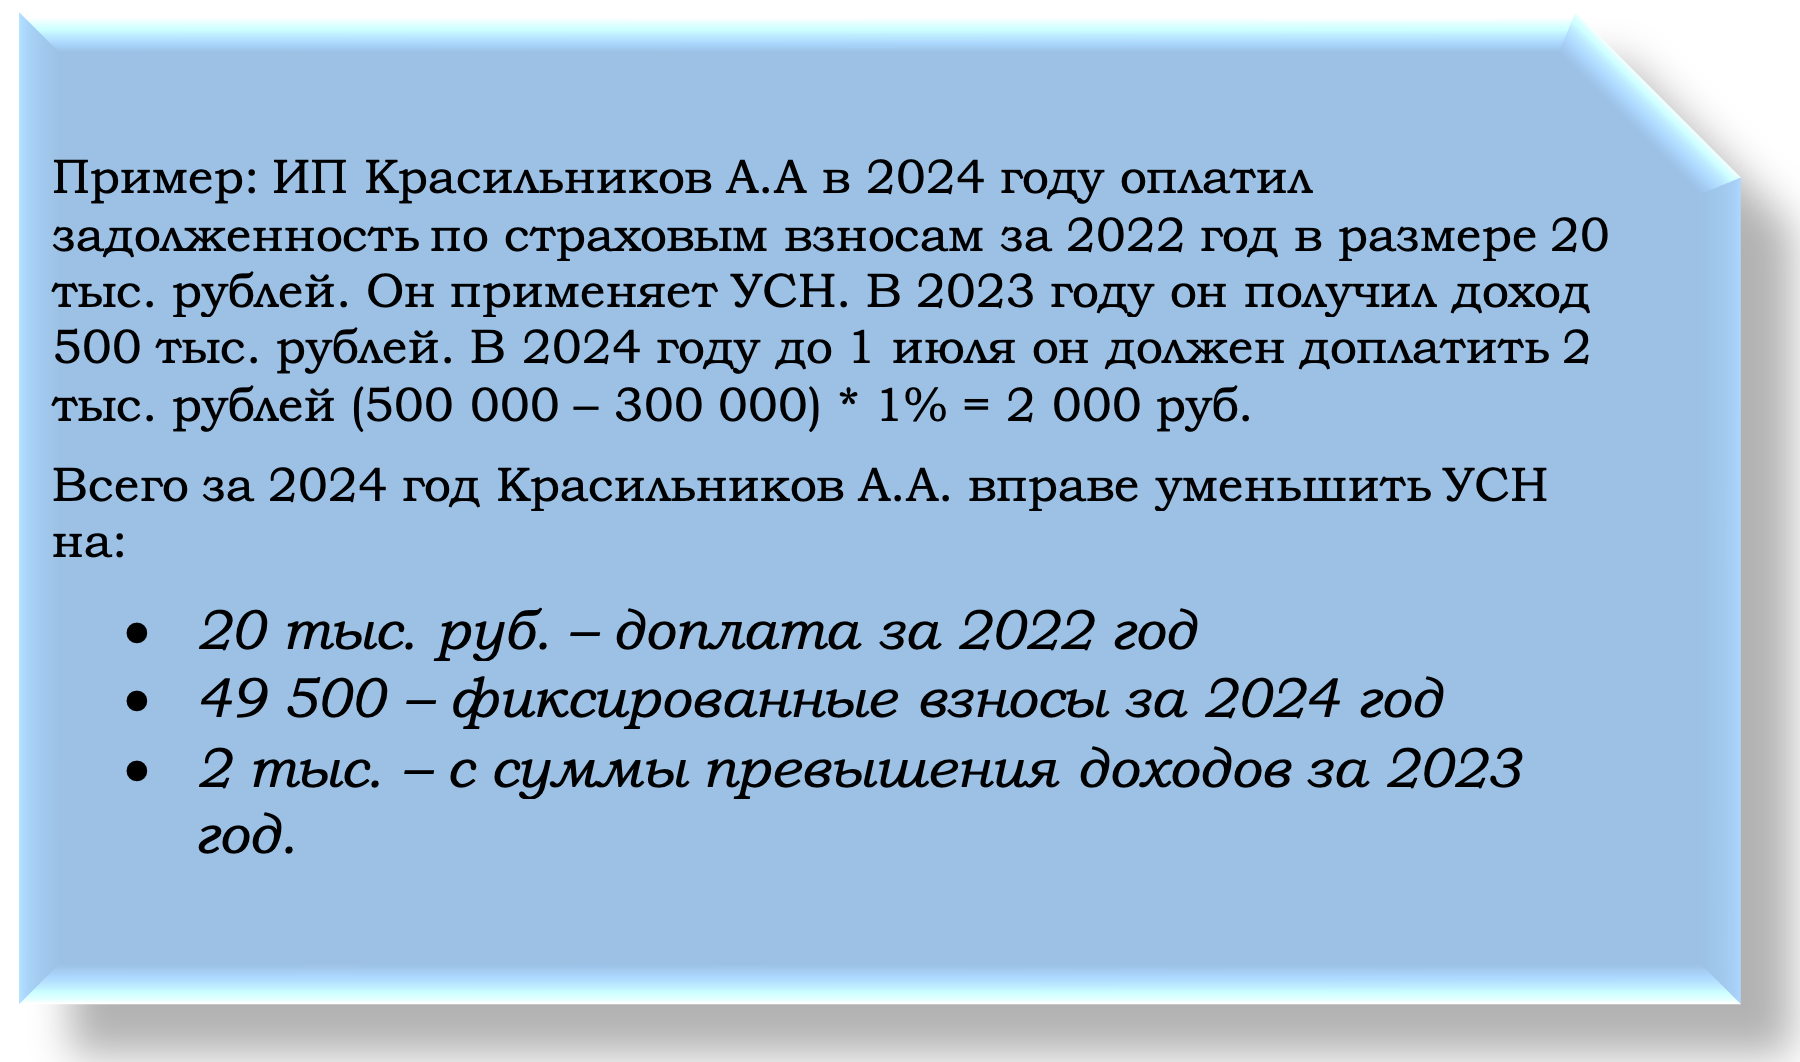 Правила уменьшения УСН на страховые взносы в 2024 году: шпаргалка для ИП